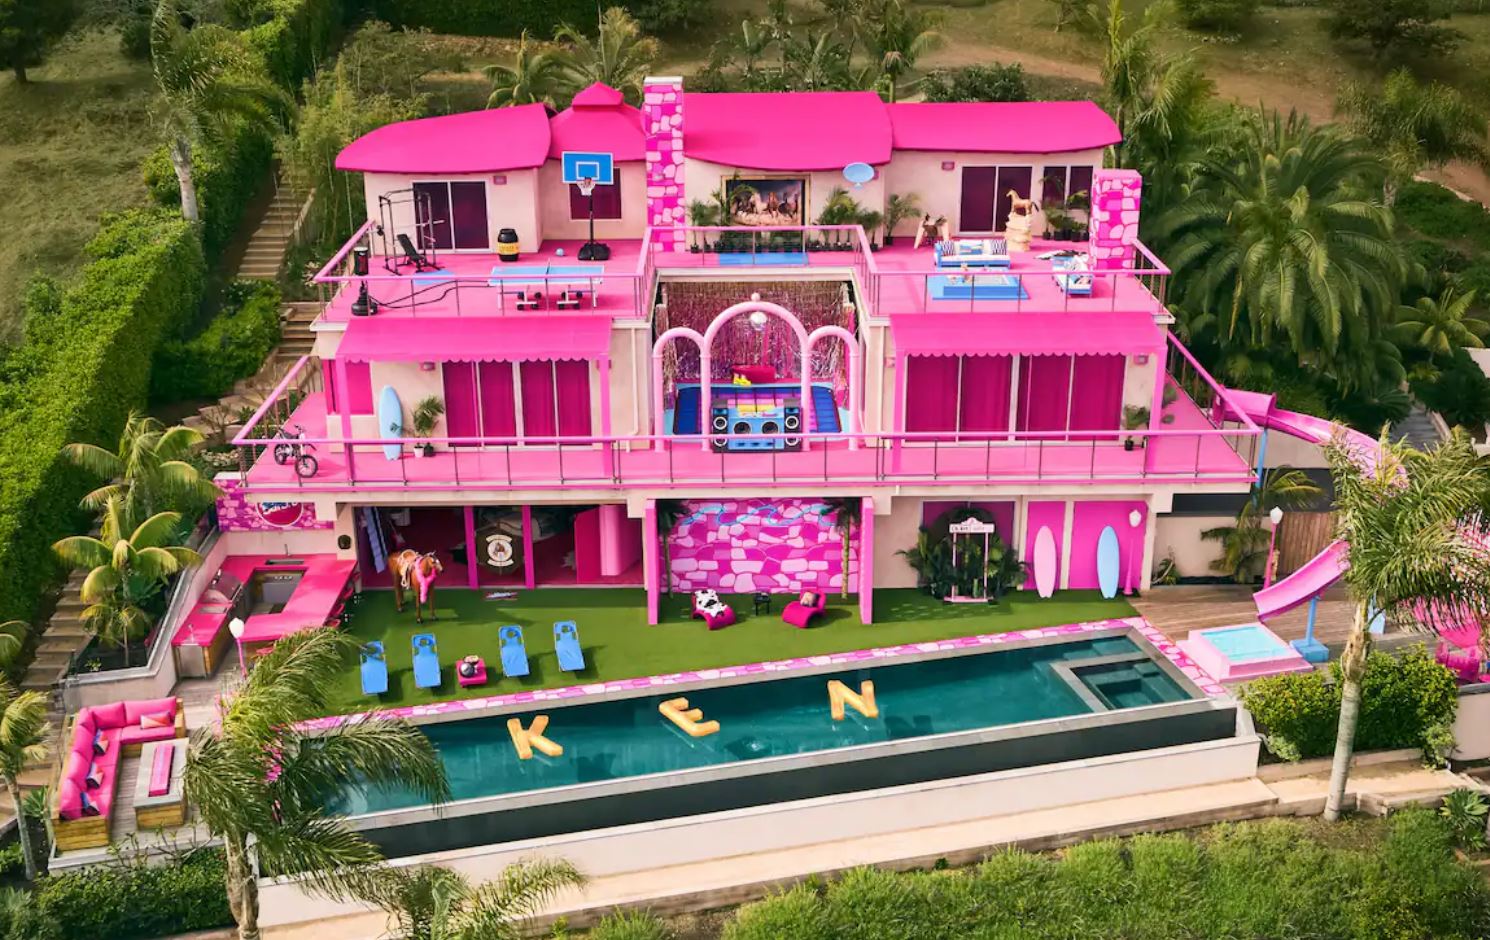 On a retrouvé la maison de Barbie & Ken sur Airbnb, vous aimez le rose ?